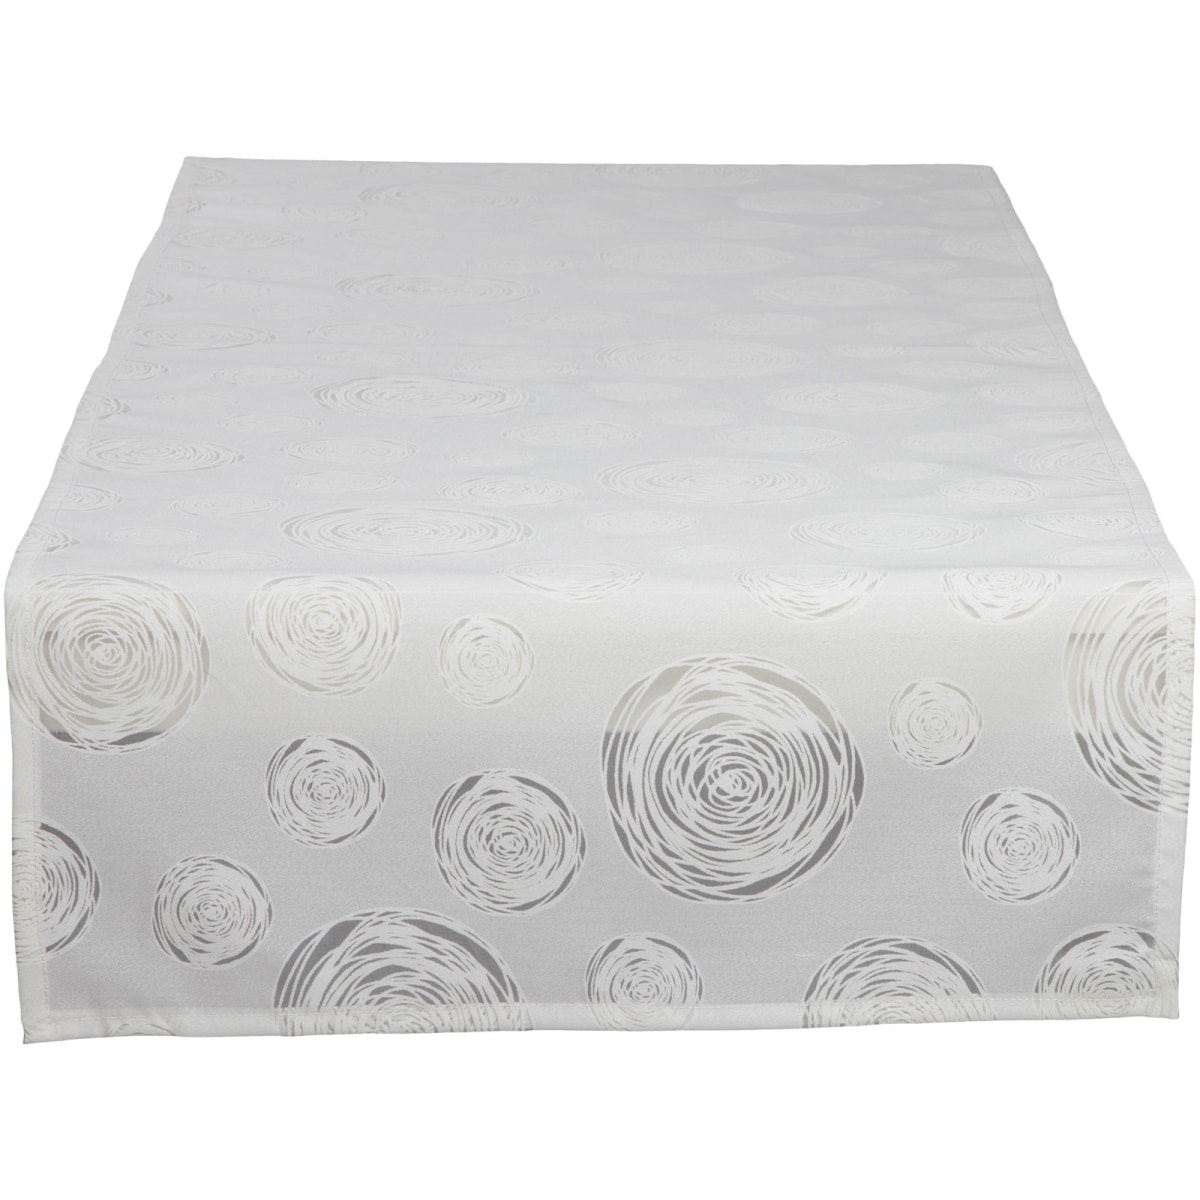 SPRÜGEL Tischläufer KUNSTKREISE I 50 x 150 cm beige/weiß